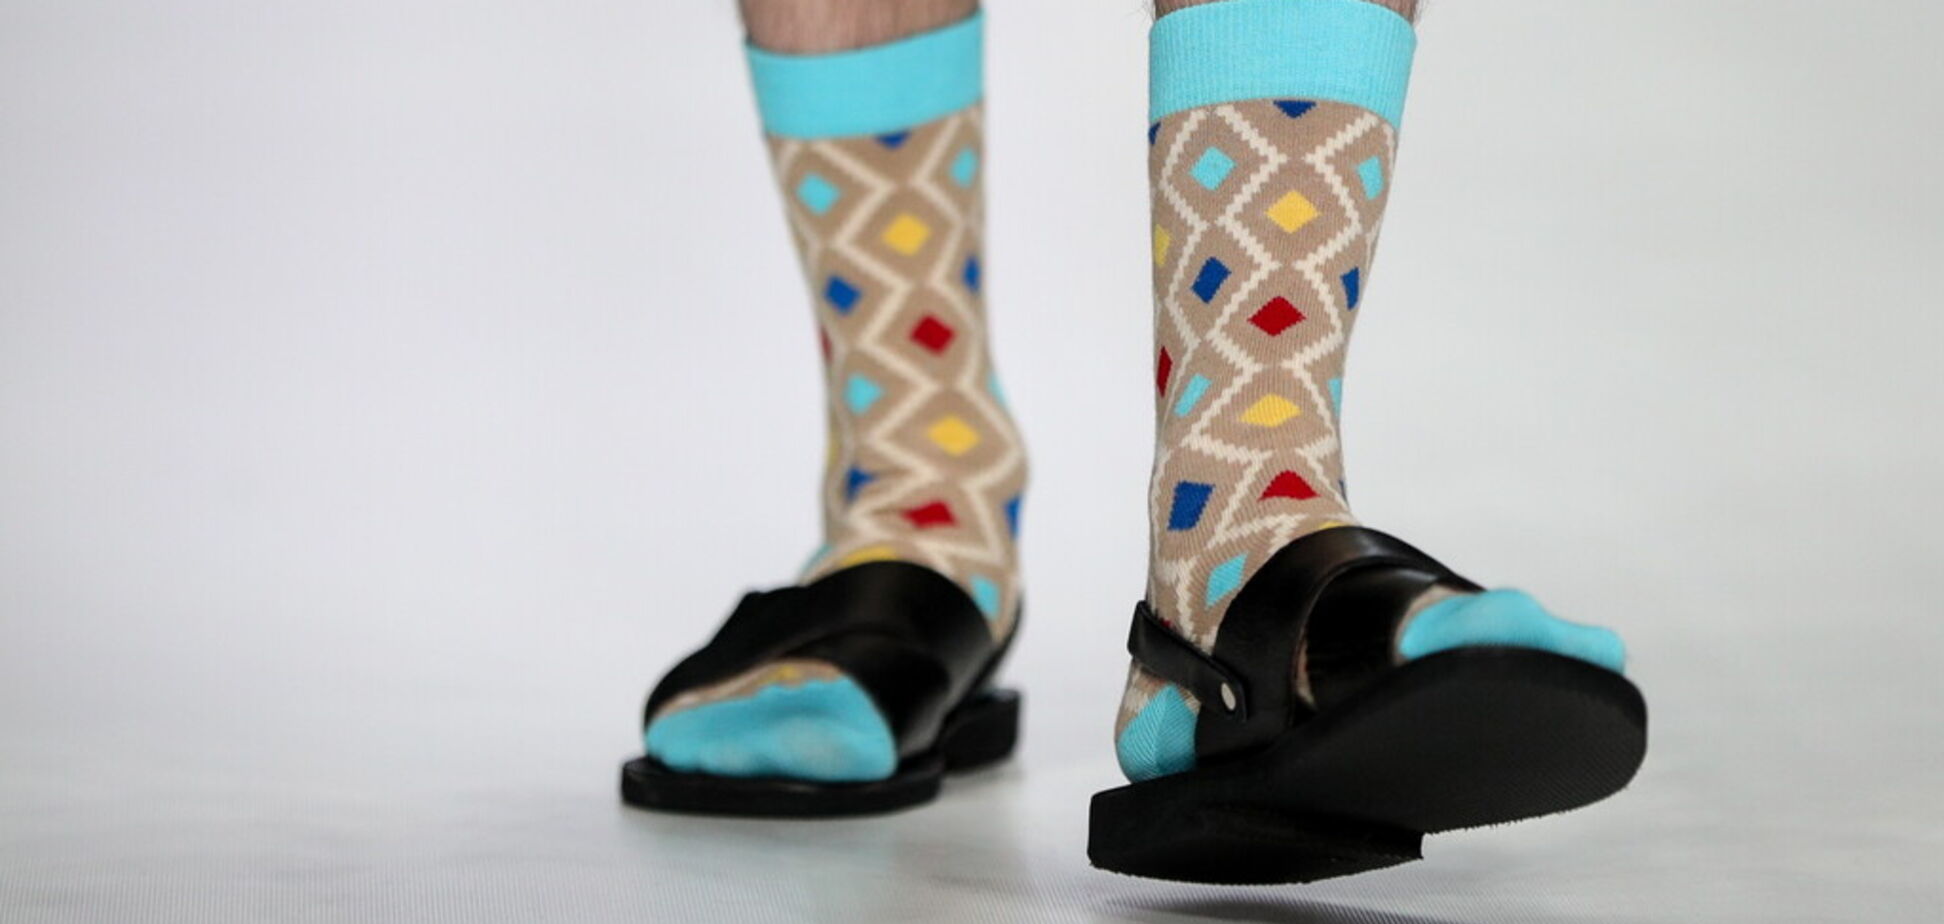 Сандалии с носками стали модным трендом